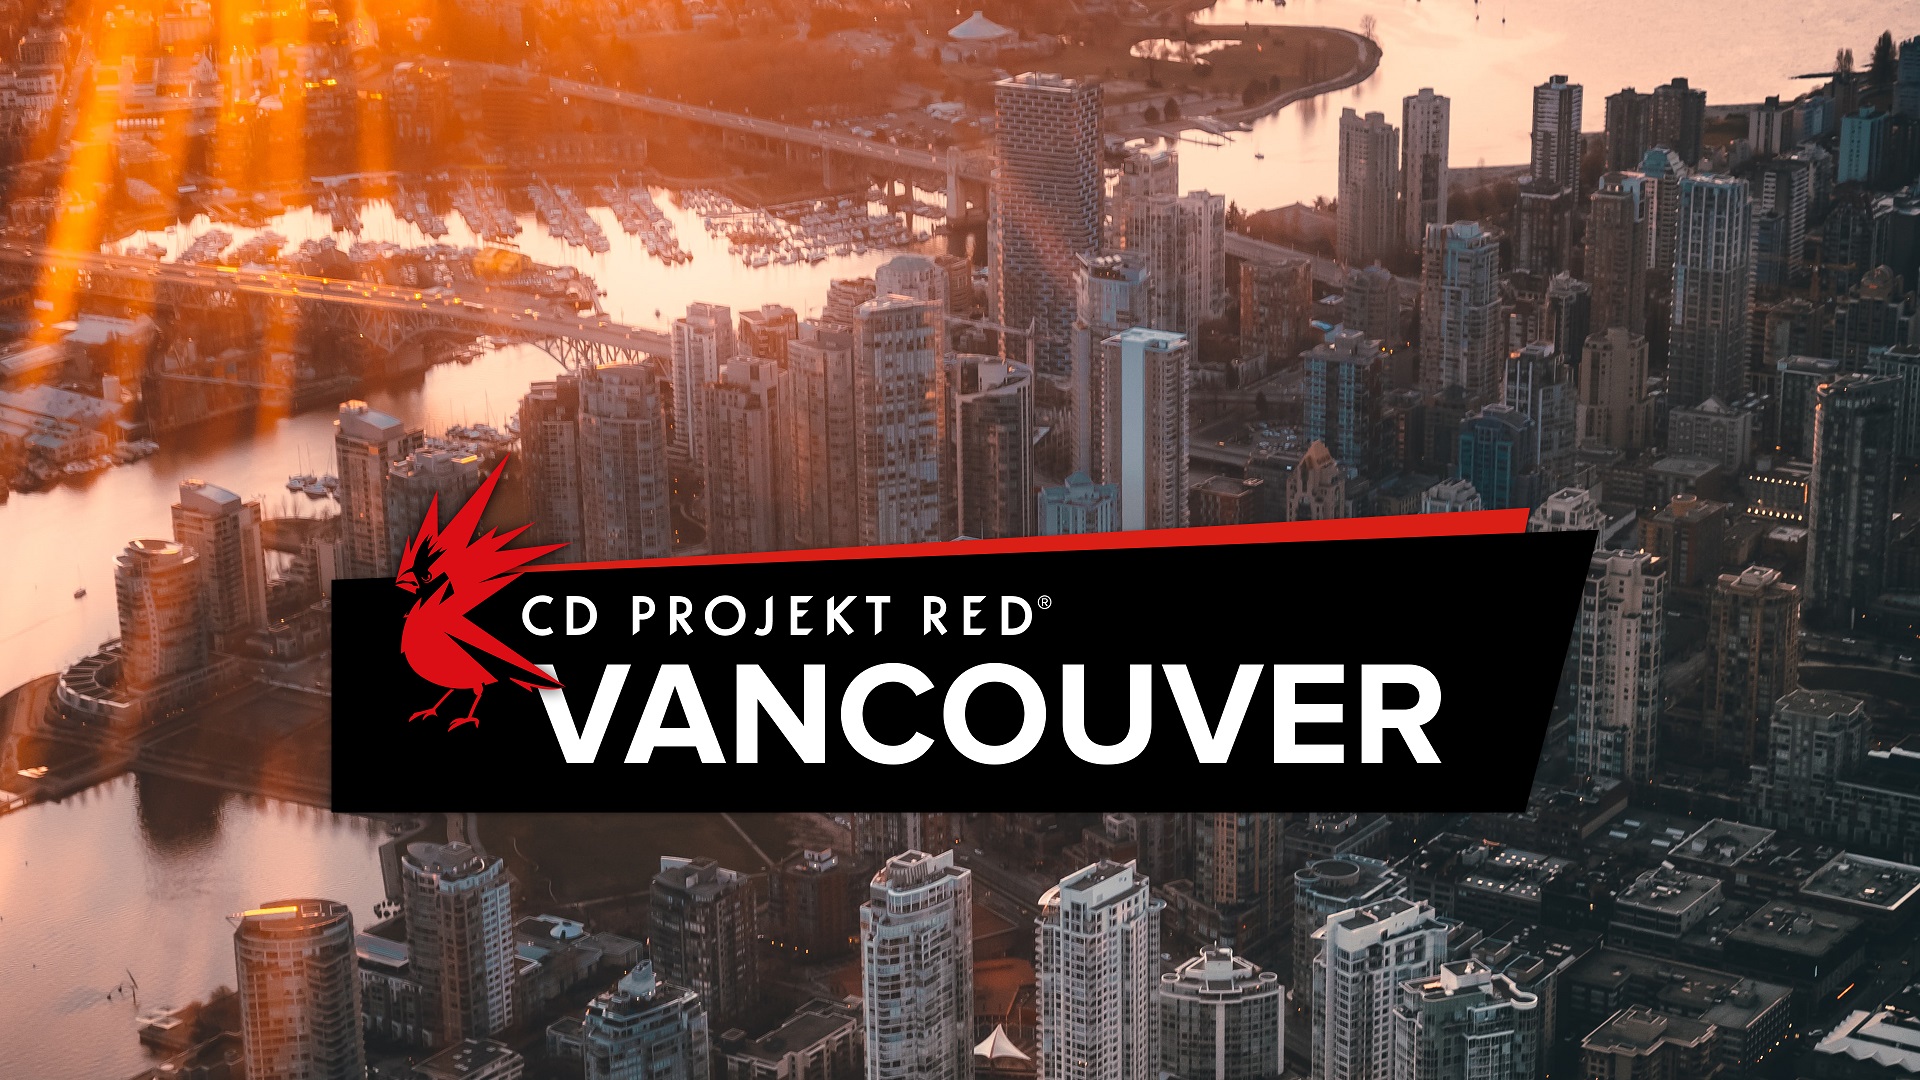 Cd Project ebomvu Vancouver